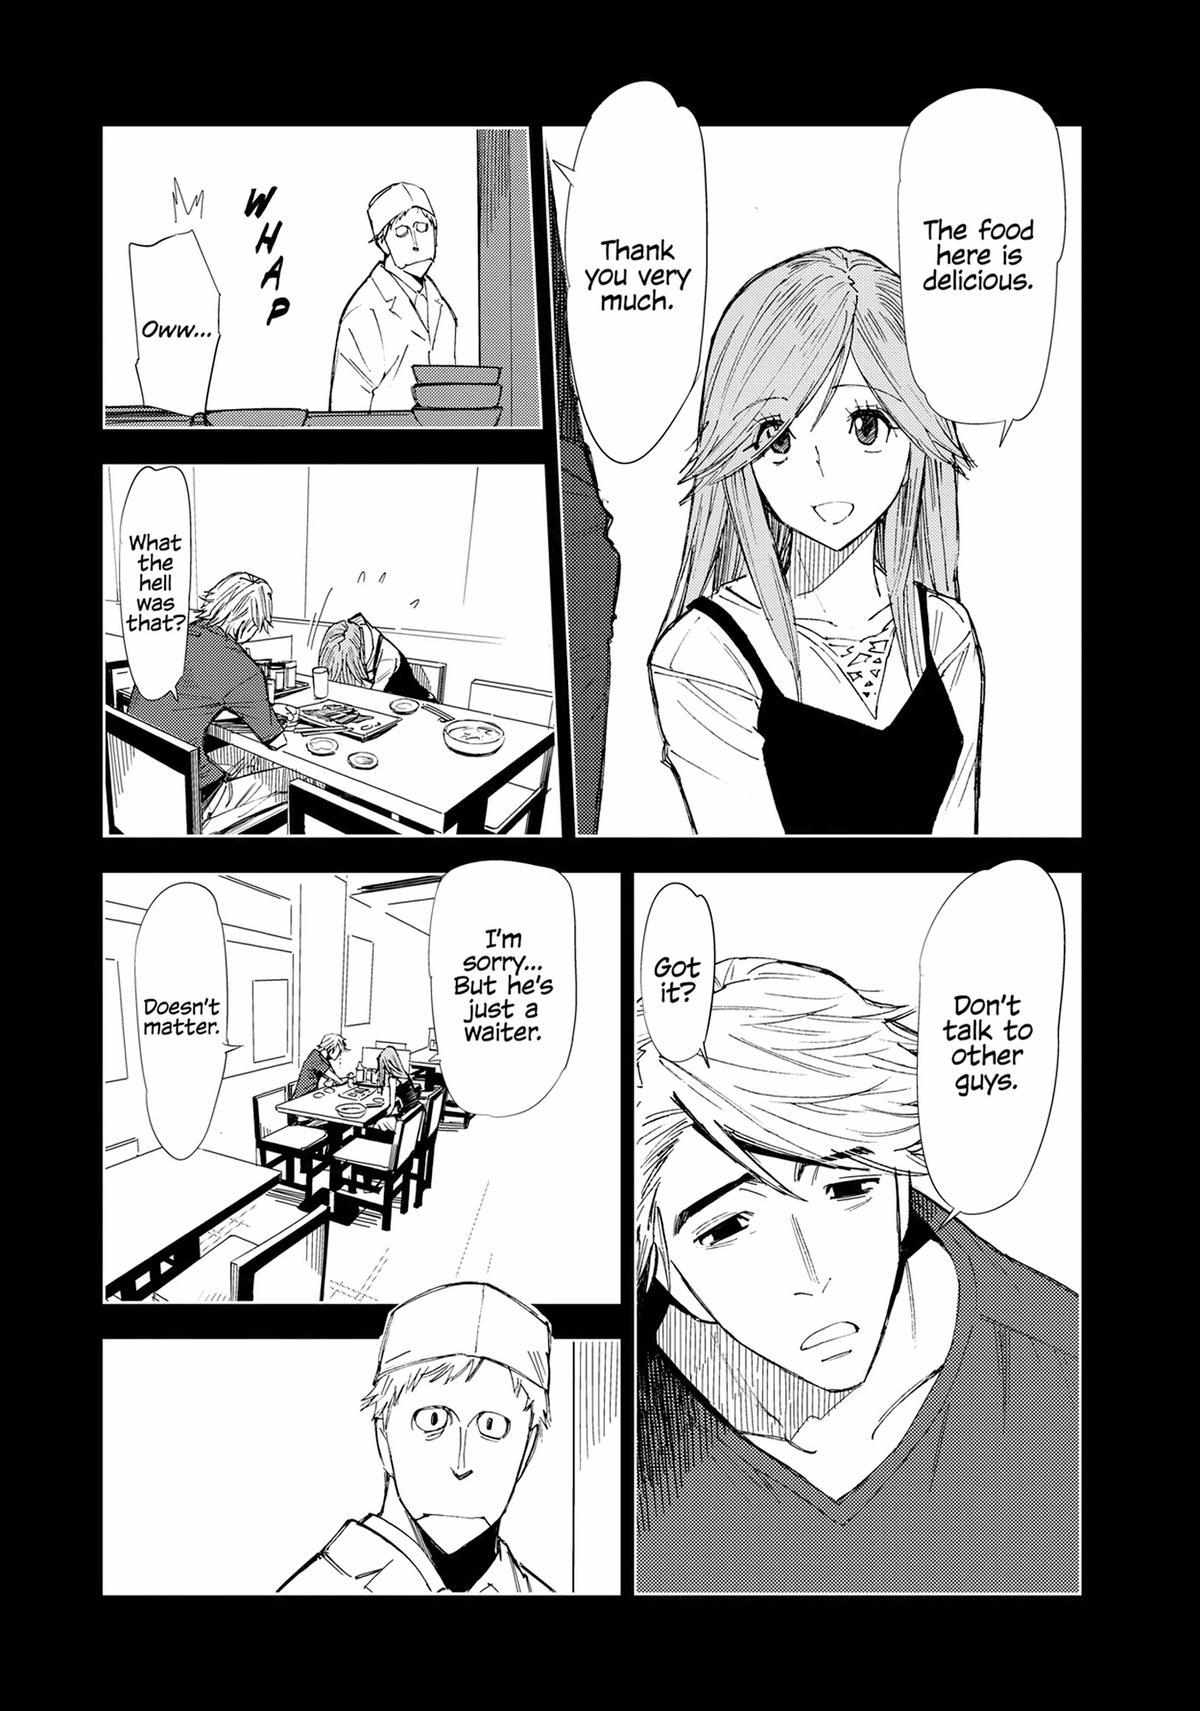 Kiruru Kill Me - 58 page 3-6f72a324